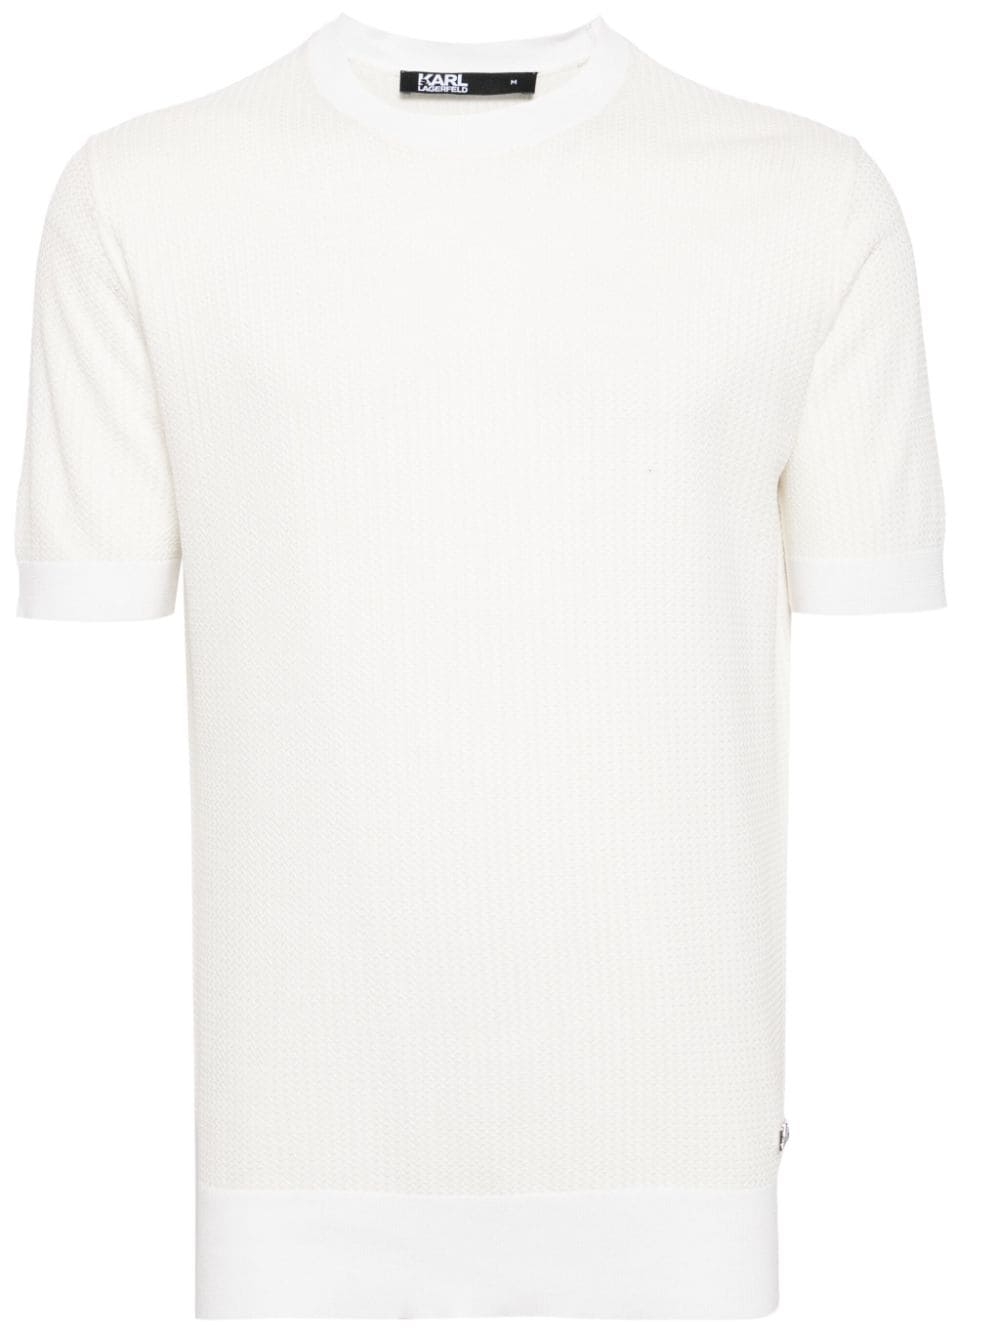 Karl Lagerfeld logo-appliqué knitted top - White von Karl Lagerfeld